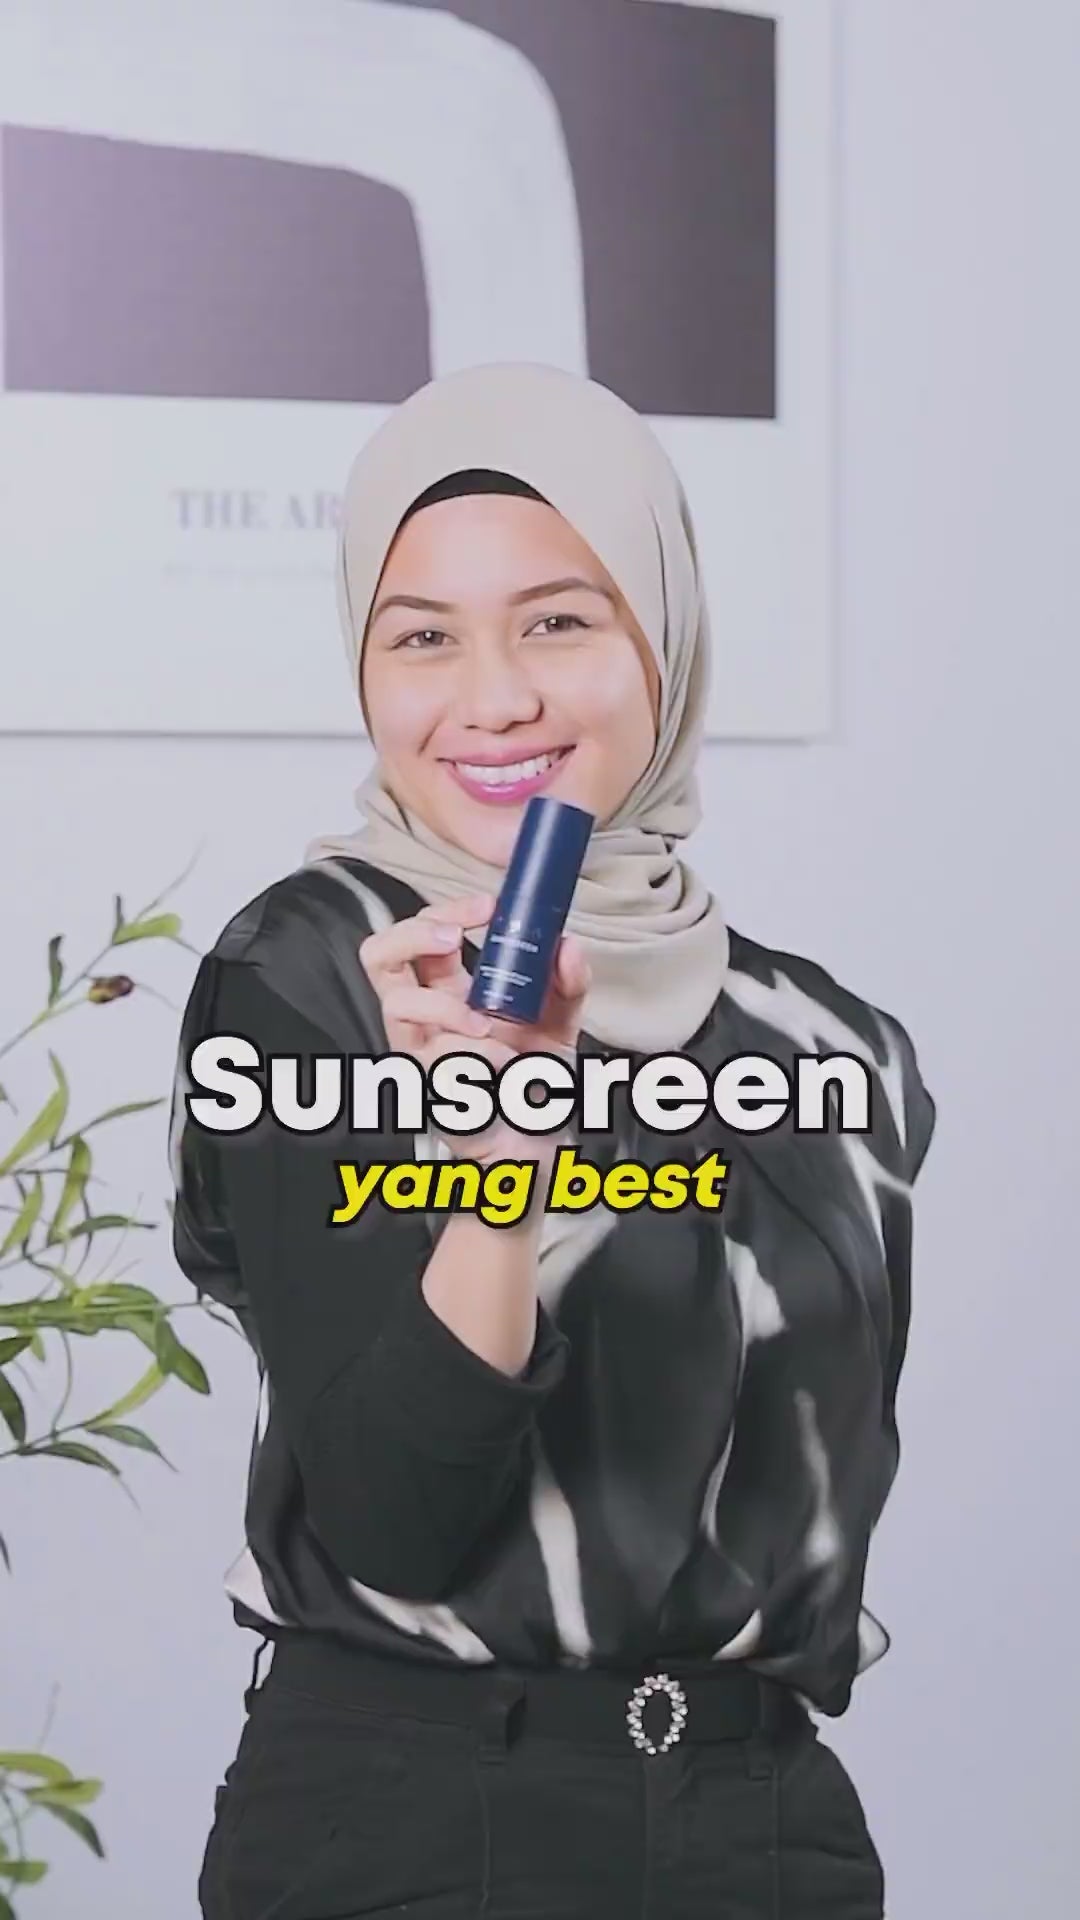 Ainaa Sunscreen (20ml)